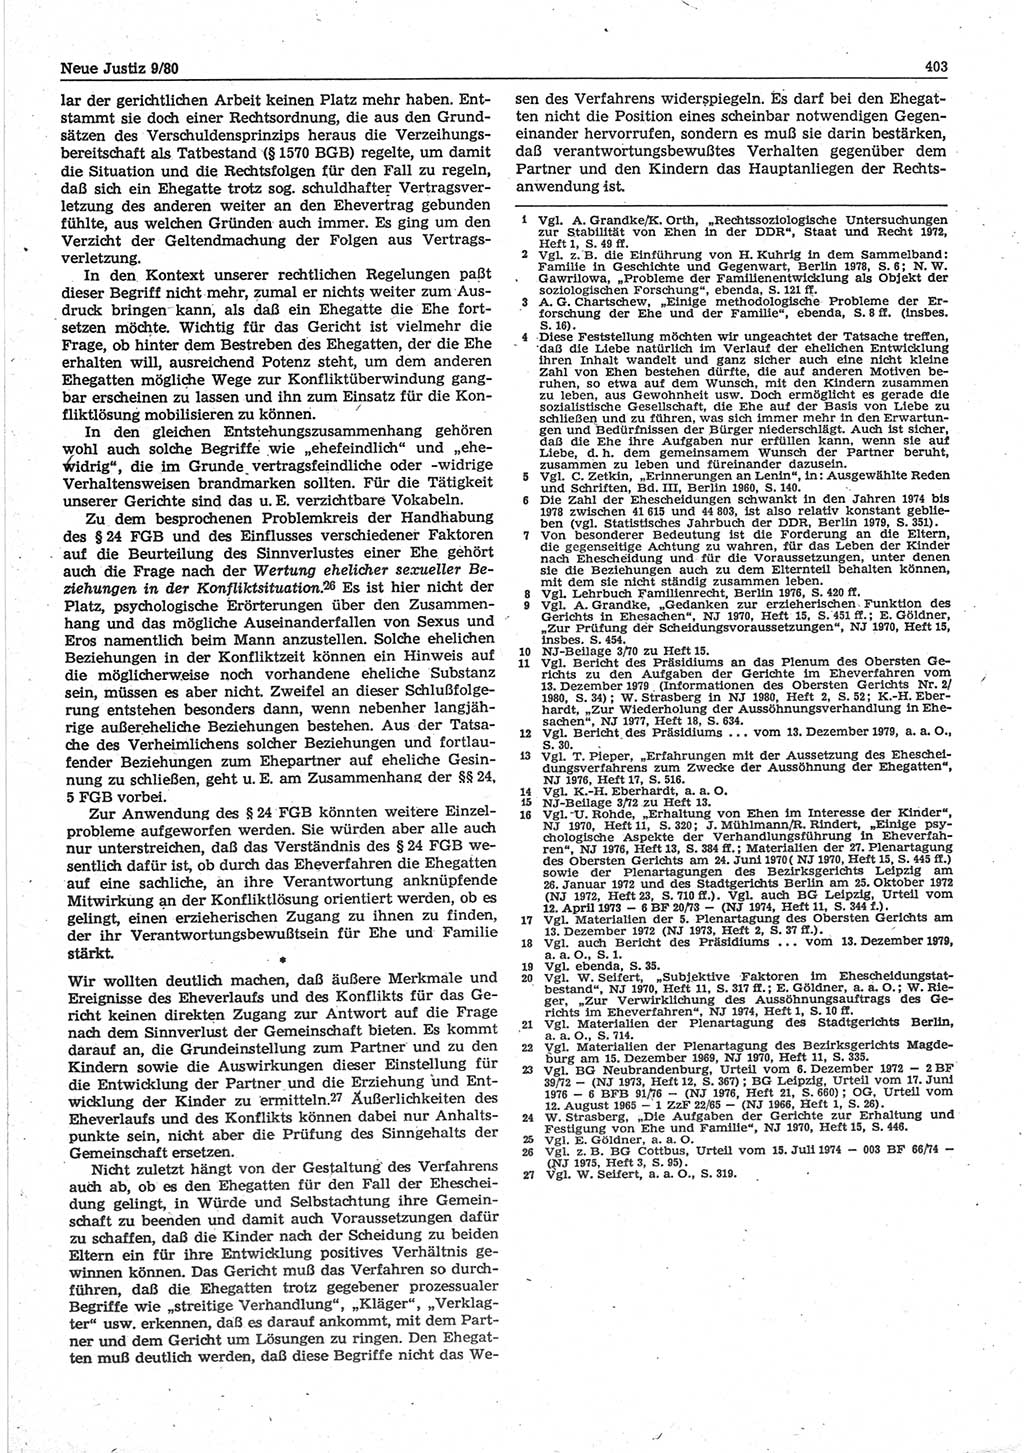 Neue Justiz (NJ), Zeitschrift für sozialistisches Recht und Gesetzlichkeit [Deutsche Demokratische Republik (DDR)], 34. Jahrgang 1980, Seite 403 (NJ DDR 1980, S. 403)